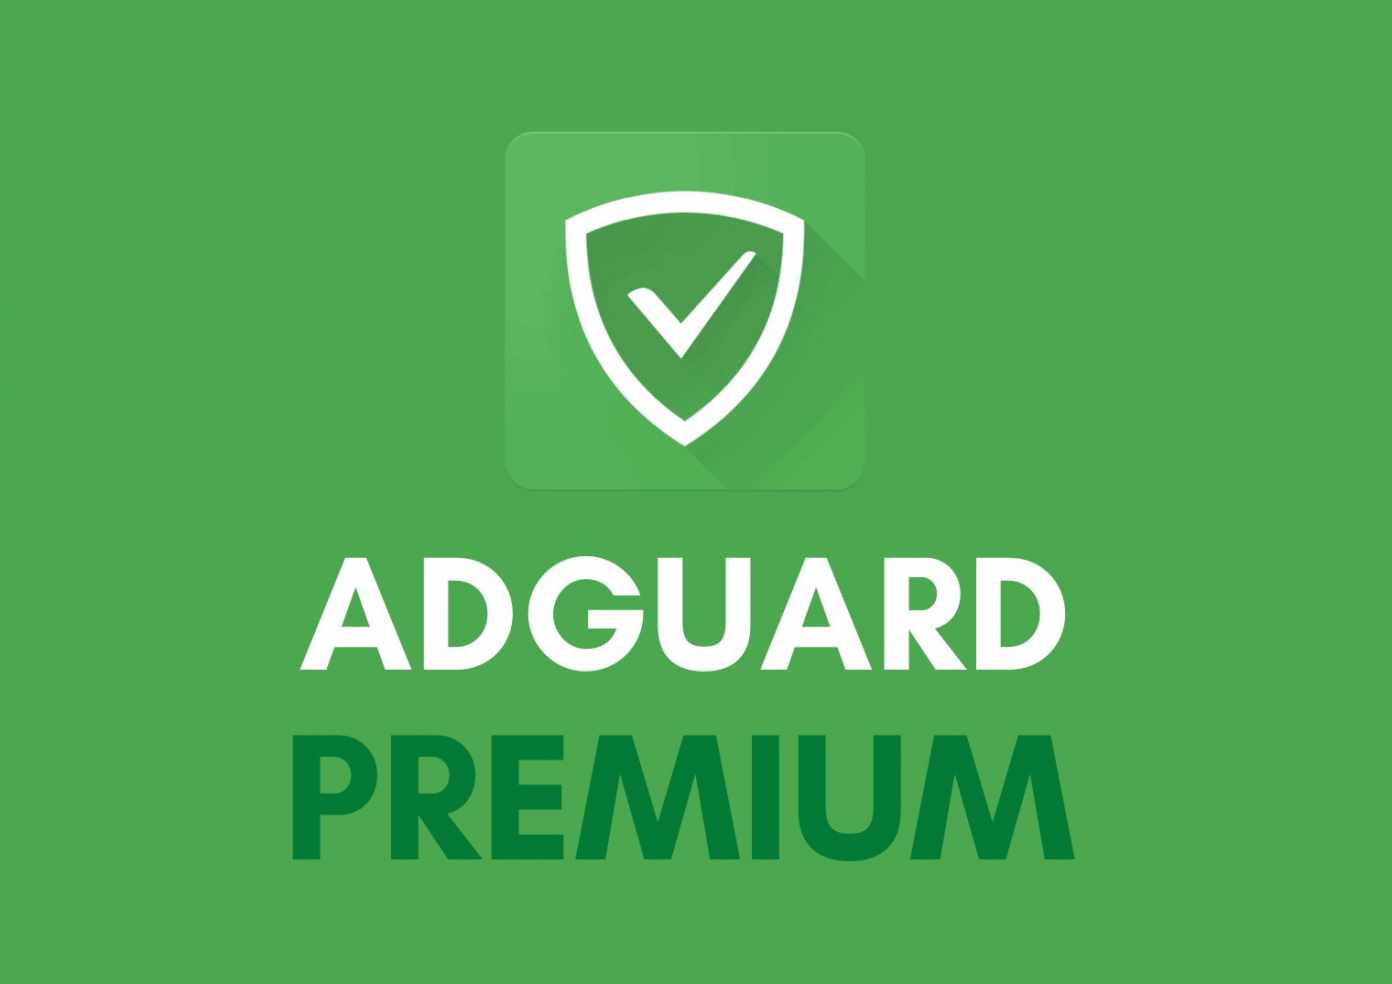 adguard premium android free